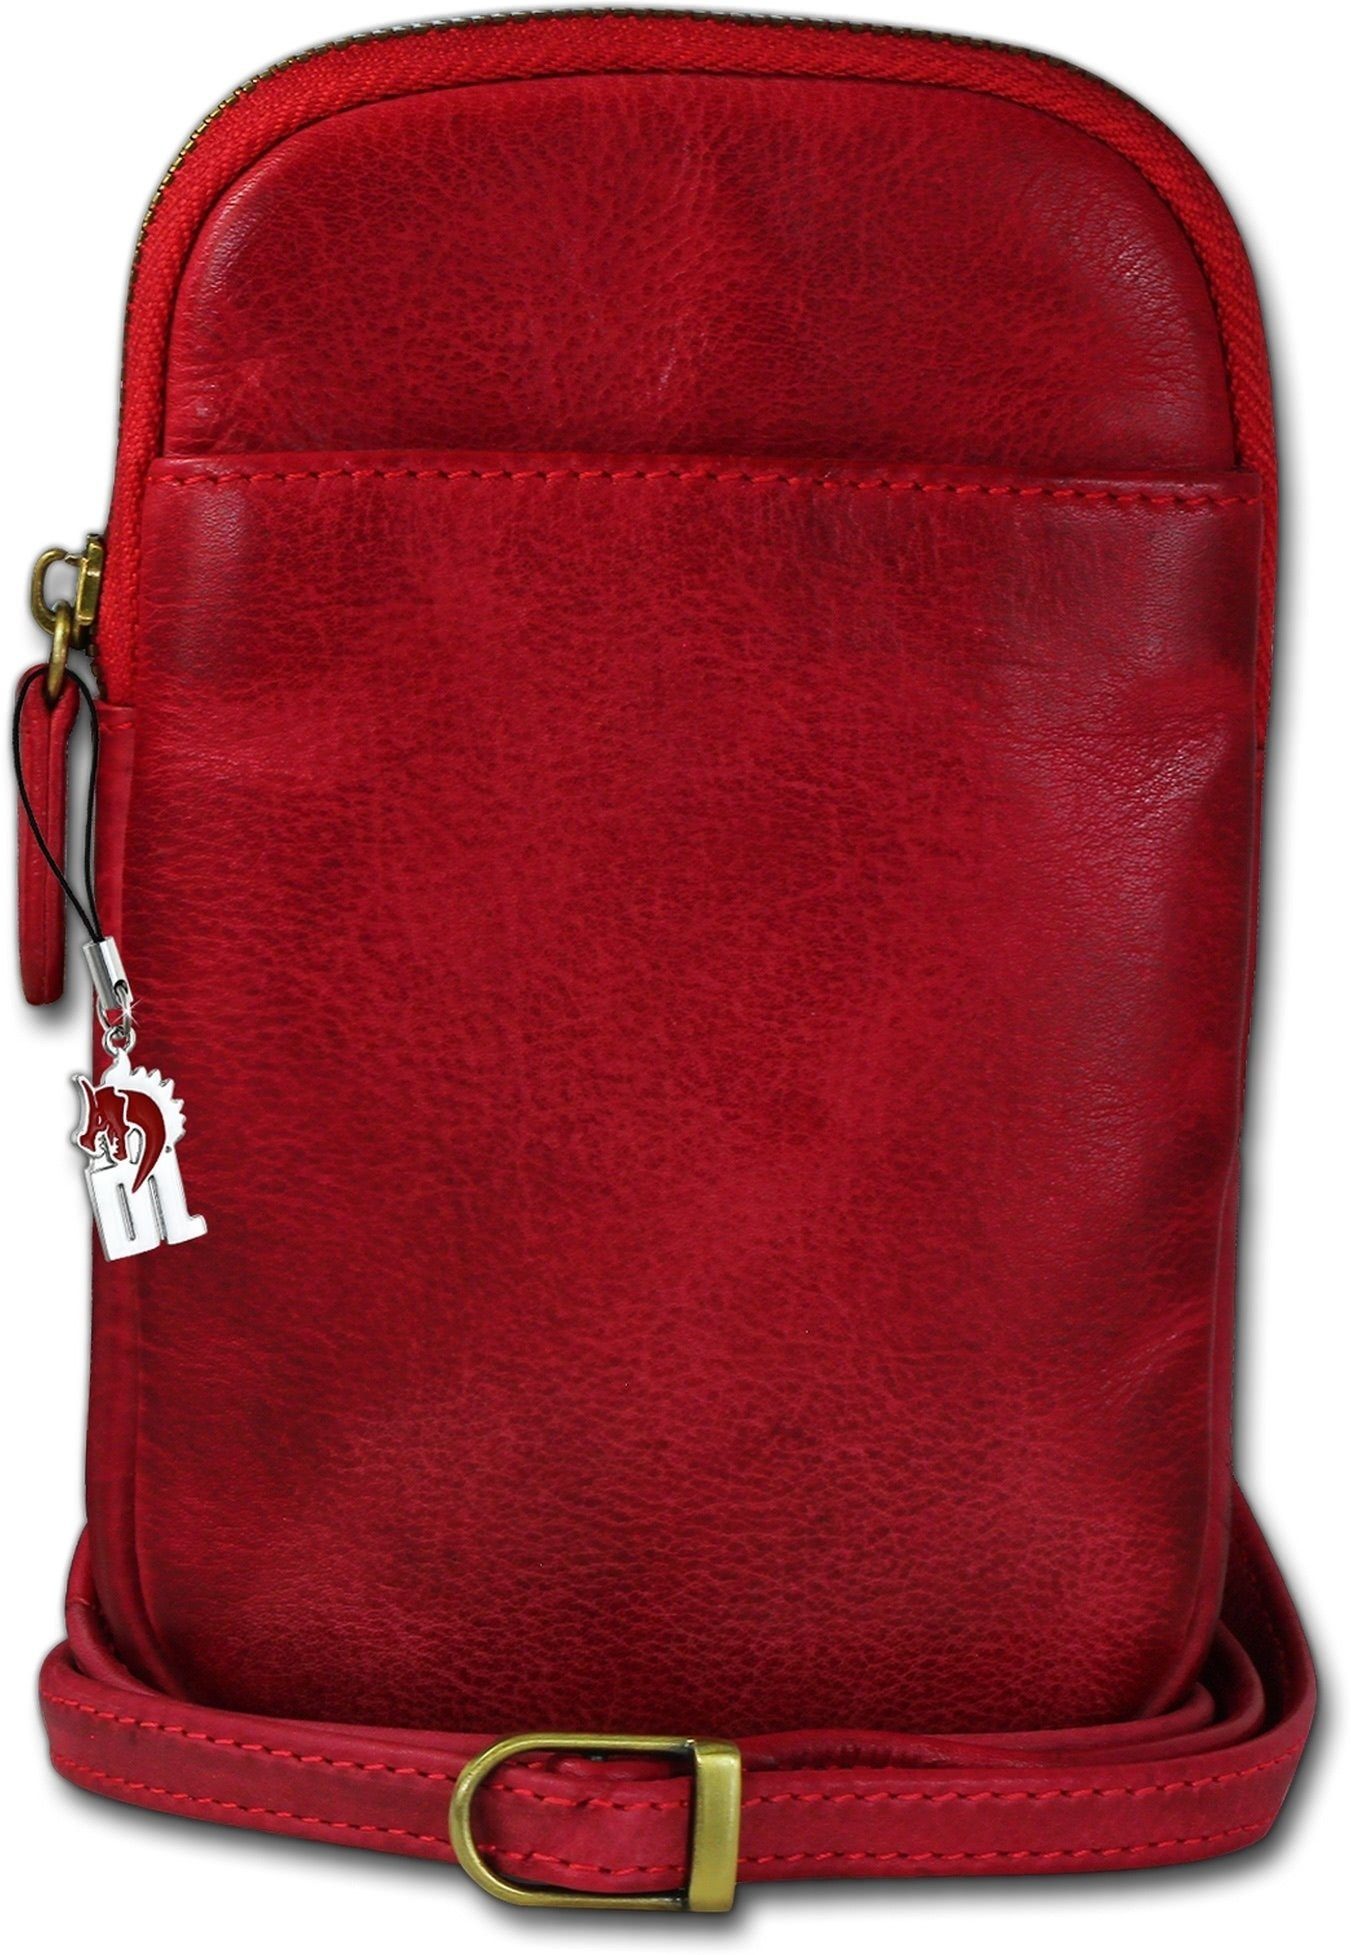 Umhängetasche (Umhängetasche, Umhängetasche), Umhängetasche Damen Handtasche, Handtasche Größe Tasche DrachenLeder ca. DrachenLeder Echtleder rot, unisex 13cm